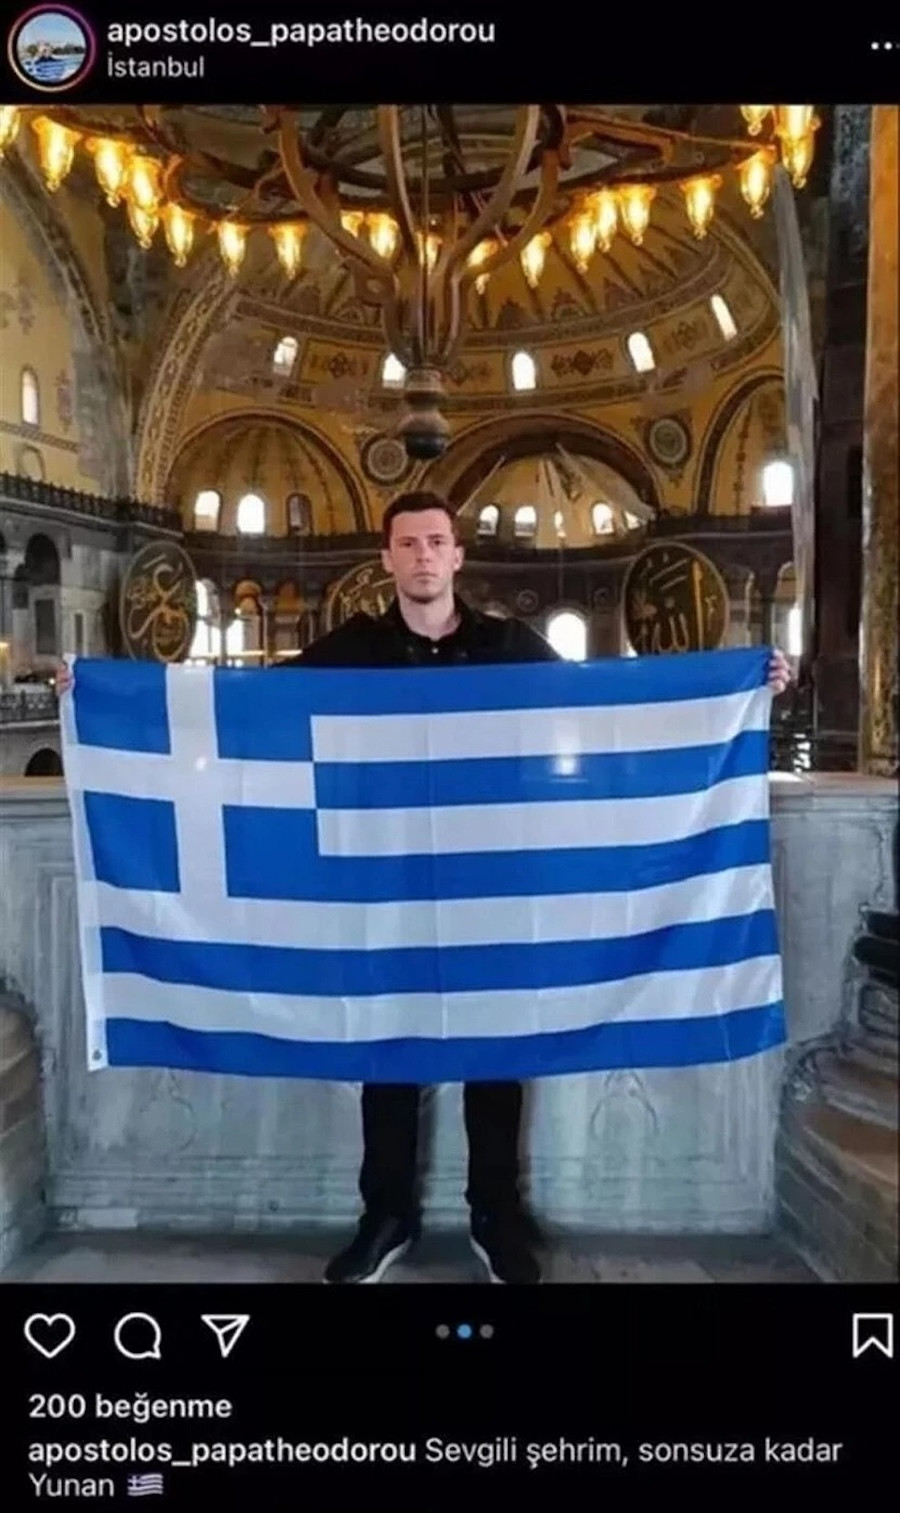 Απόστολος Παπαθεοδώρου, Ελληνική Σημαία, Αγία Σοφία, Κωνσταντινούπολη, Τουρκία